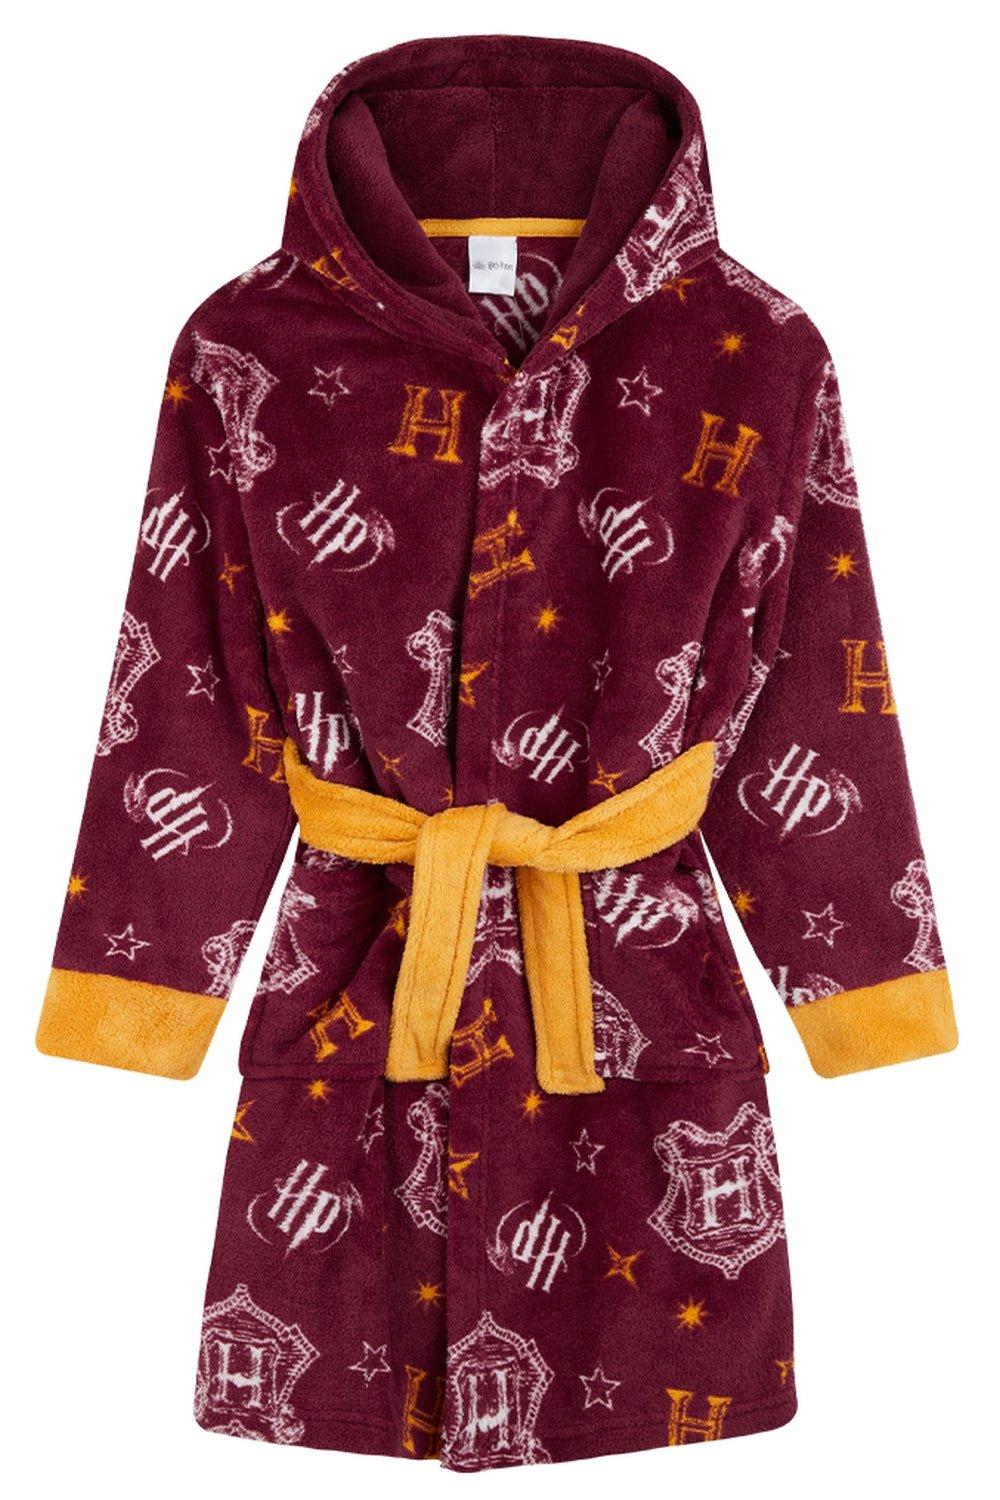 Пышный халат с капюшоном Harry Potter, красный закладка гарри поттер герб гриффиндора